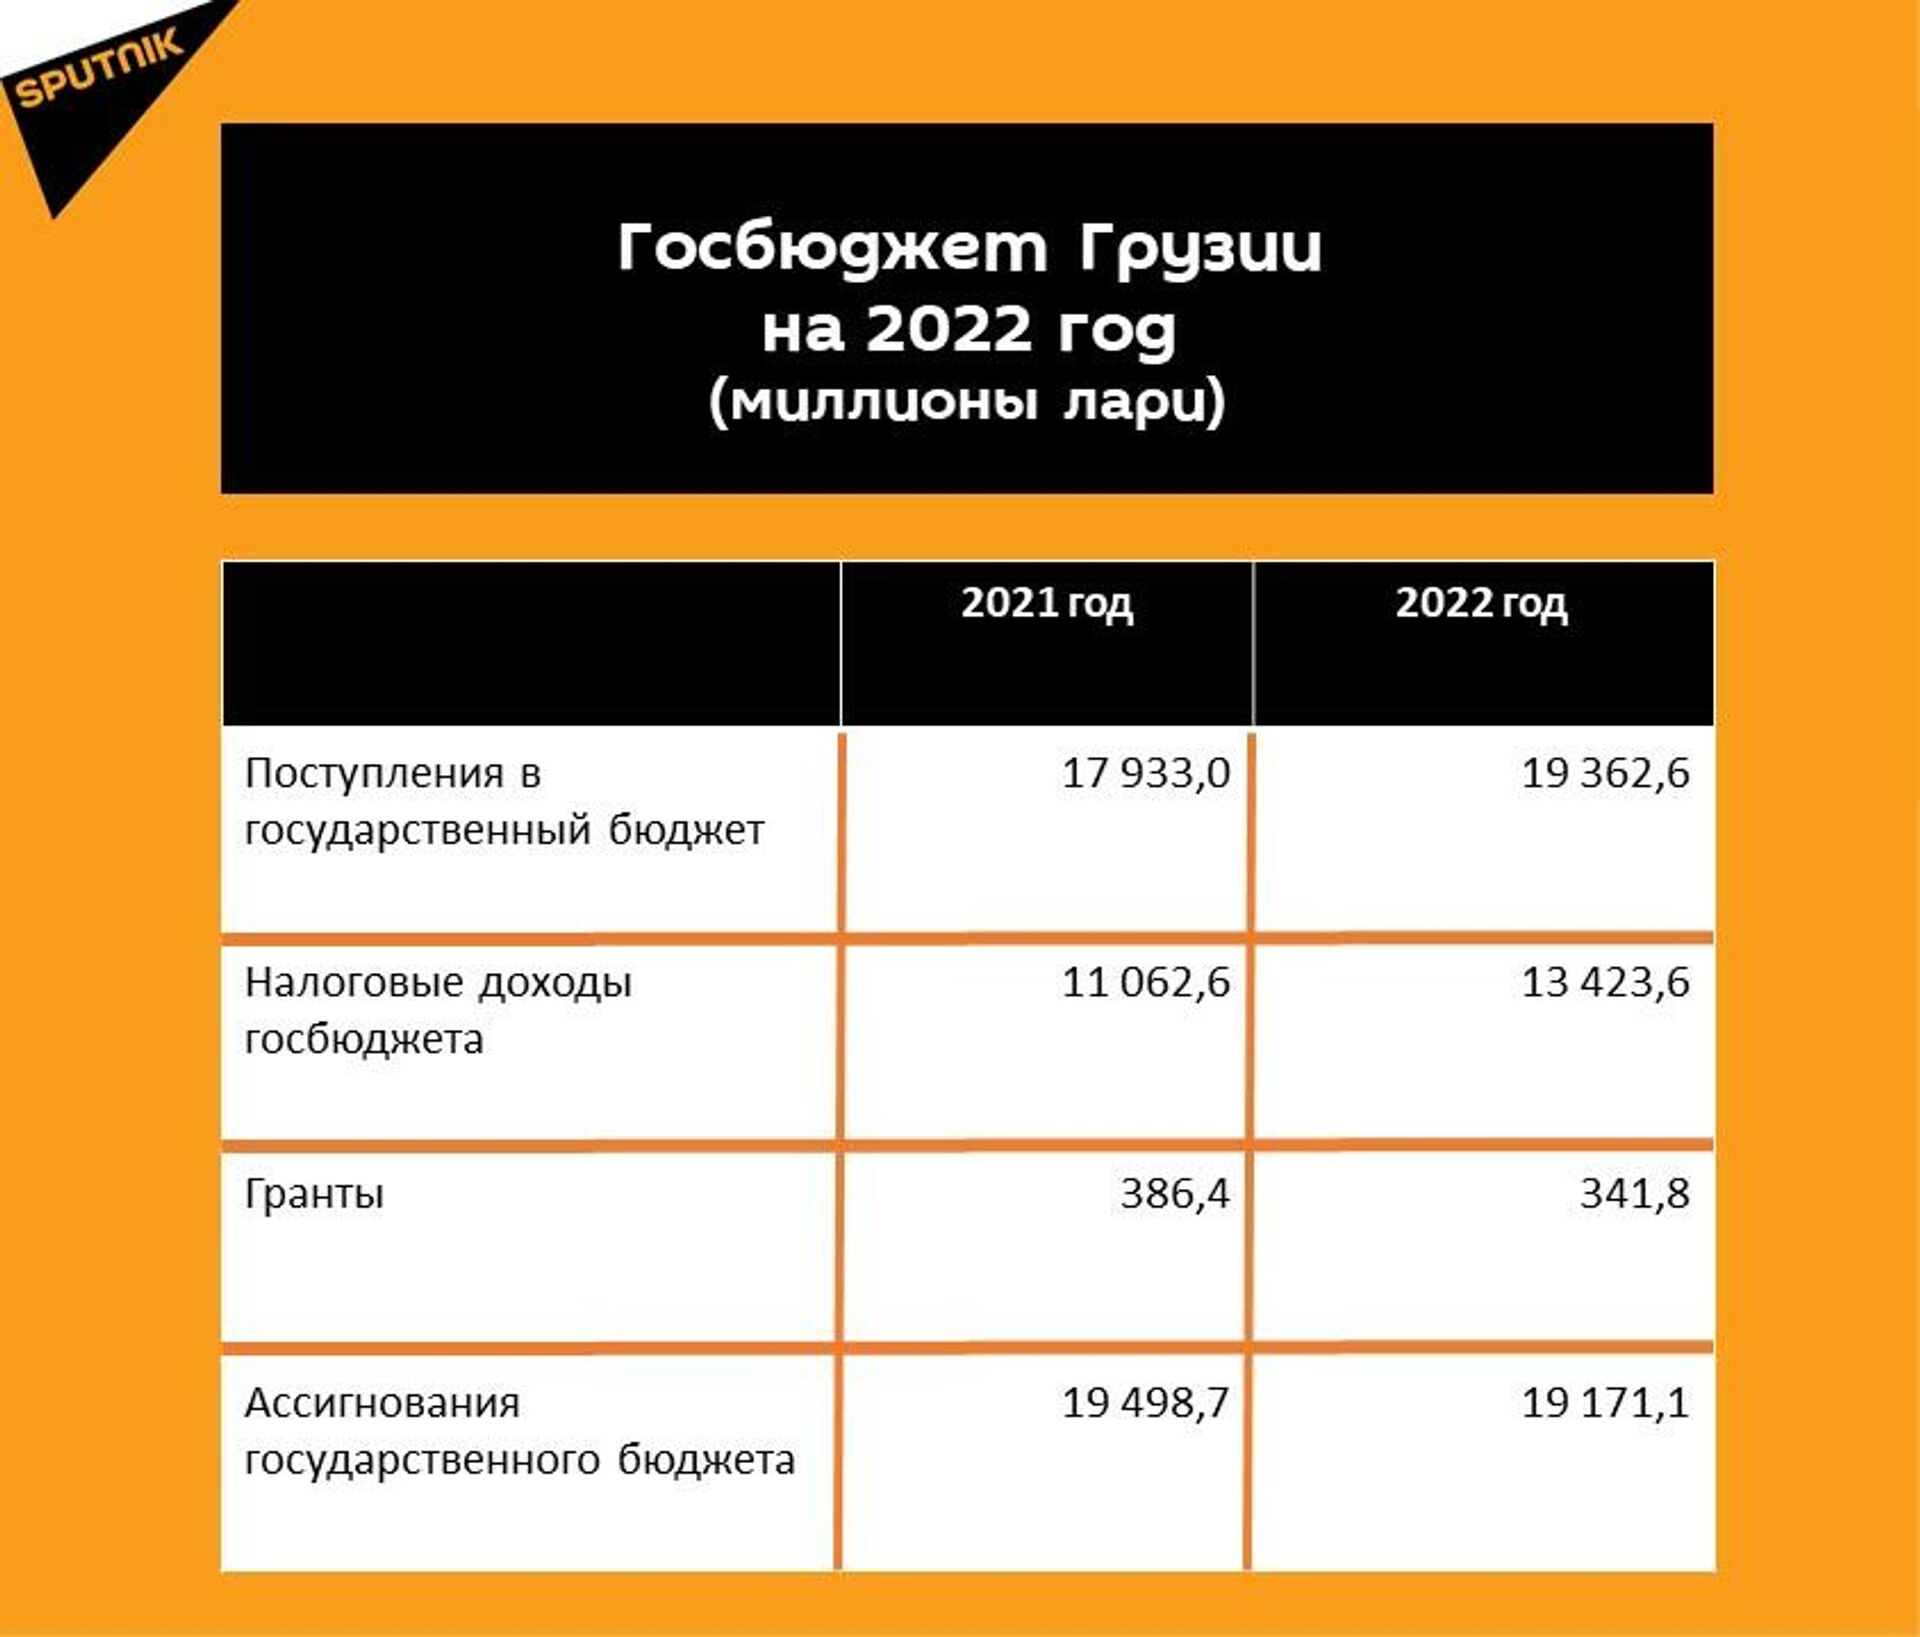 Прогнозные показатели госбюджета Грузии на 2022 год - Sputnik Грузия, 1920, 15.12.2021